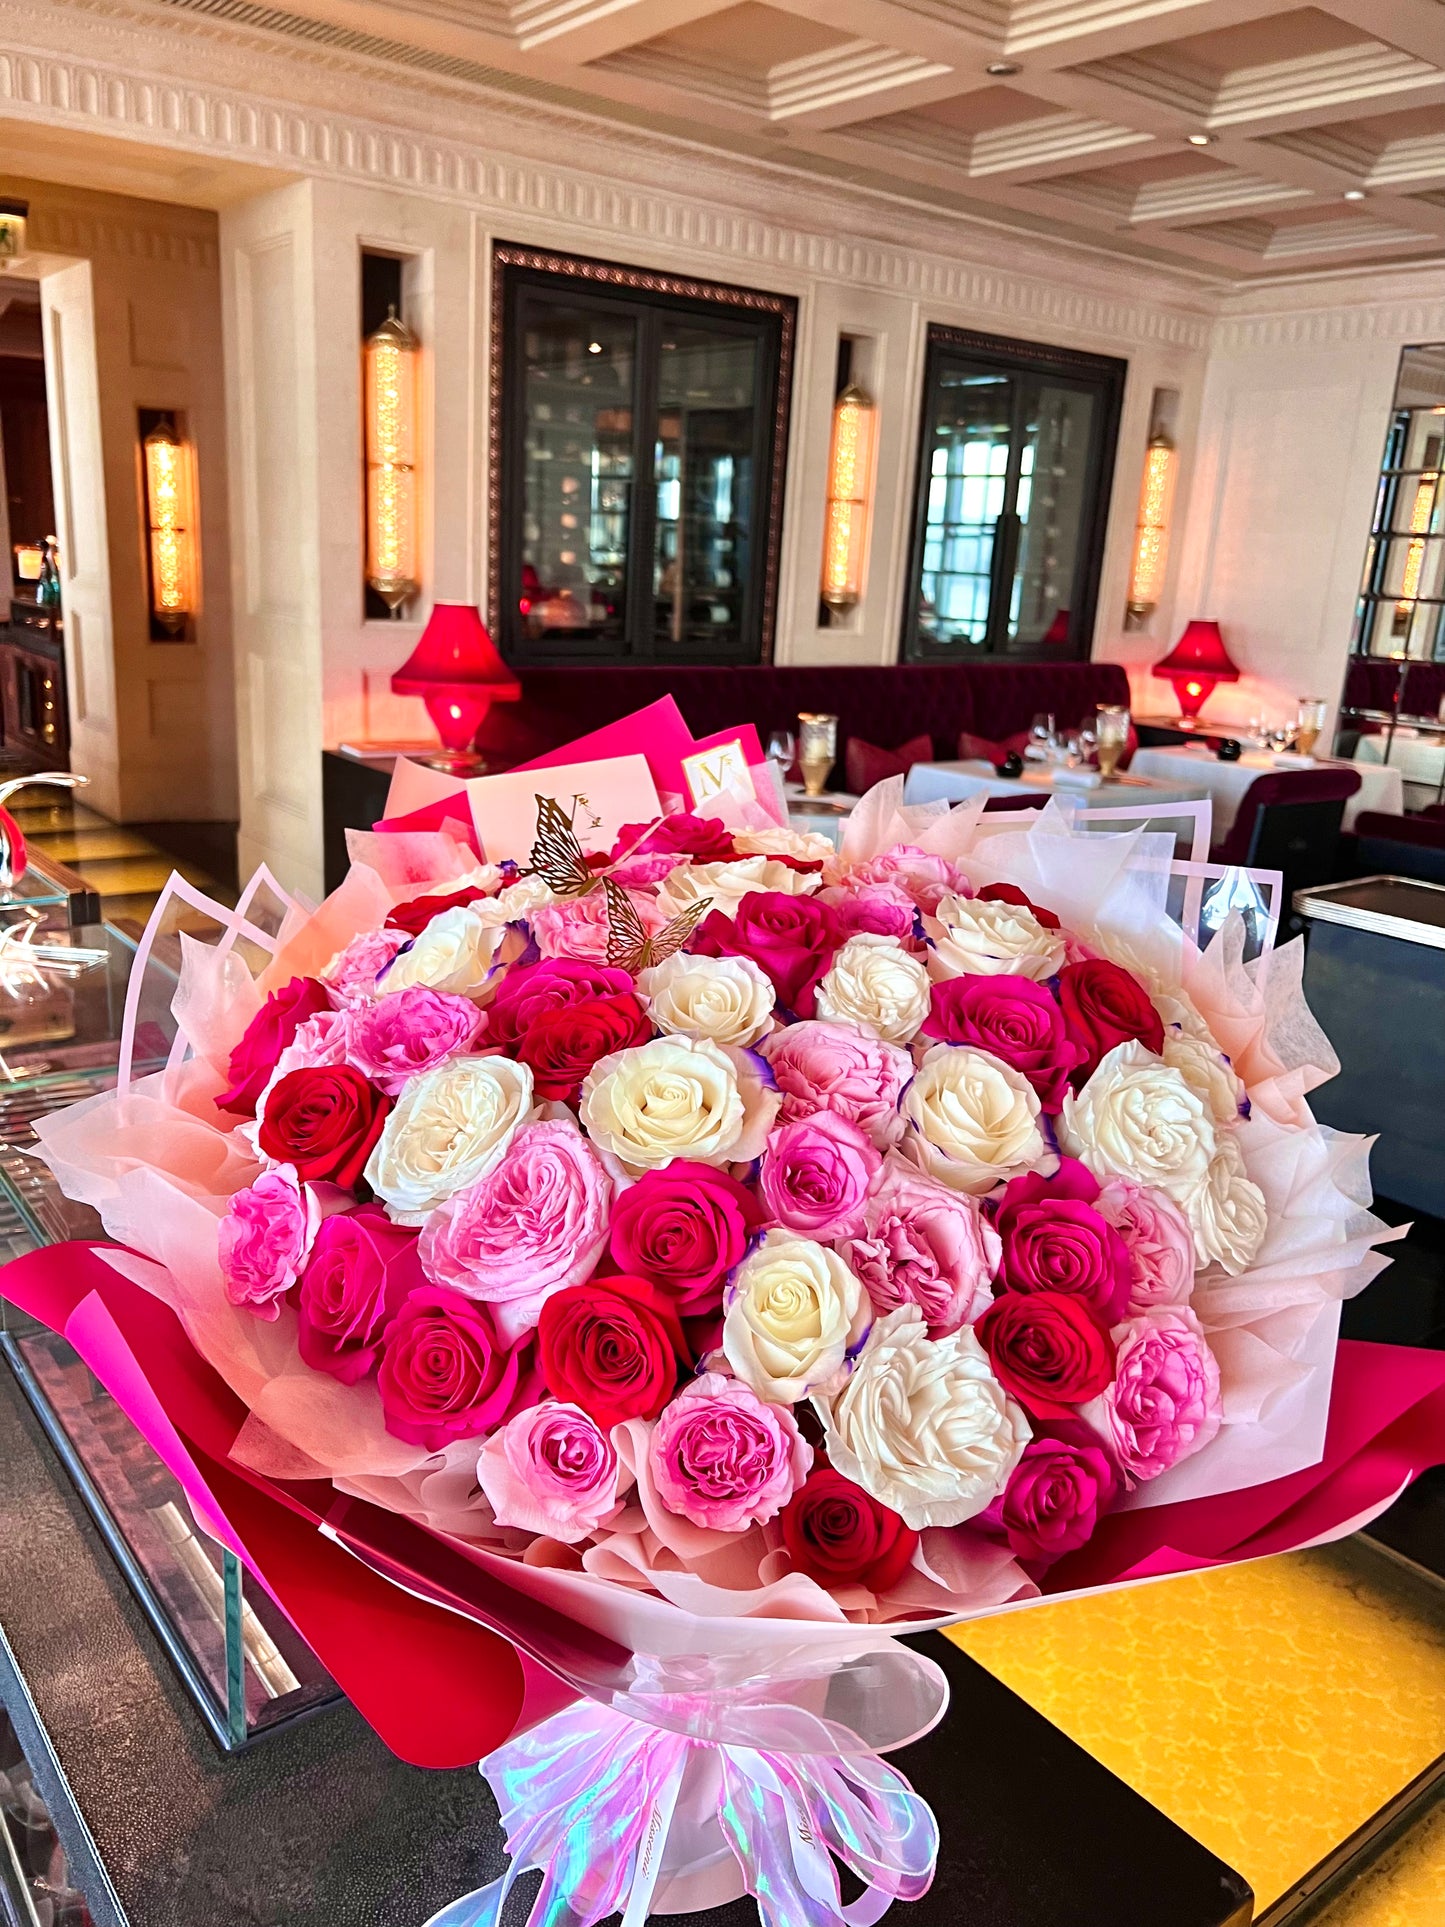 Premium Ecuadorian Roses Bouquet in Red Pink Mix